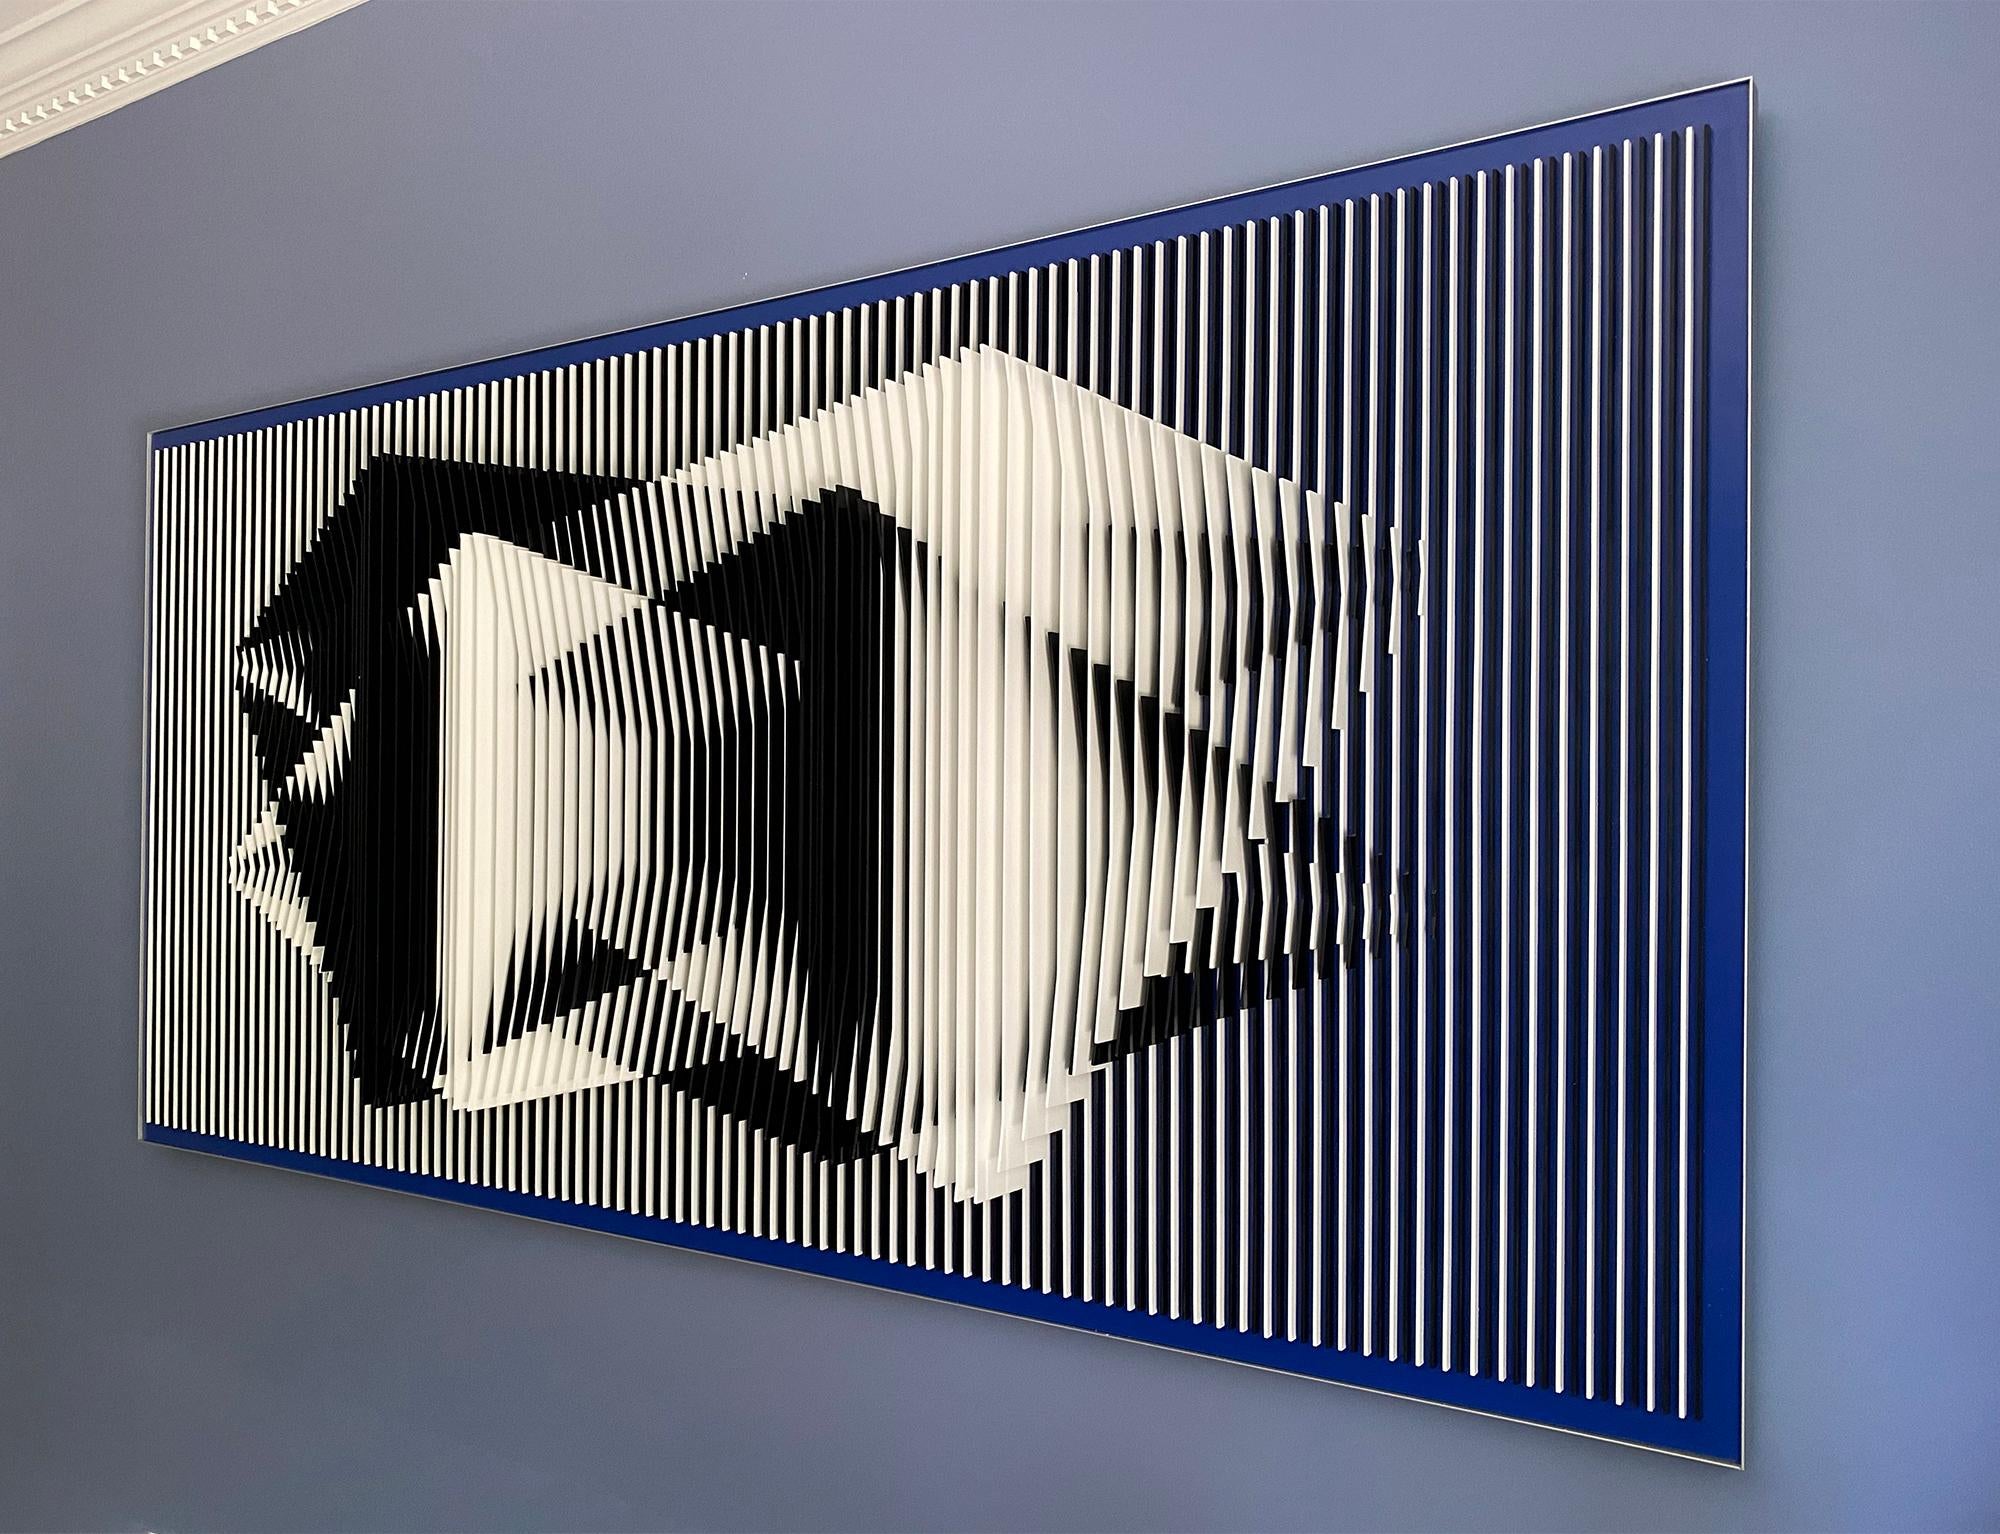 'Dual Perspectives' war das preisgekrönte Werk, das 2017 von J. Margulis für die BOMBAY SAPPHIRE® Artisan Series von 2000 internationalen Künstlern eingereicht wurde. Diese Wandskulptur ist ein perfektes Beispiel für Margulis' Werk, das auf dem